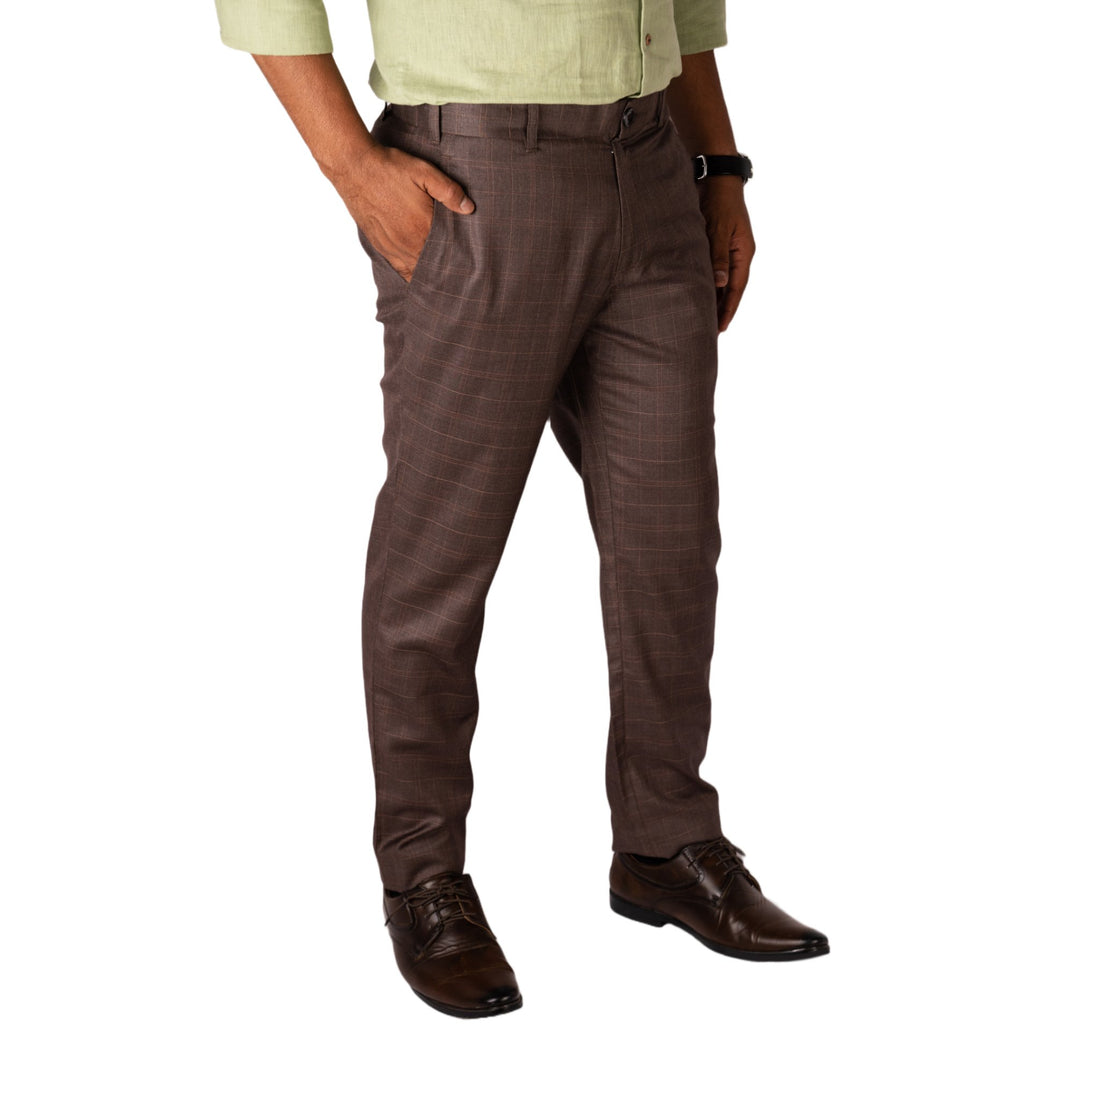 Tan color check blend cotton trousers pant for men – Punekar Cotton